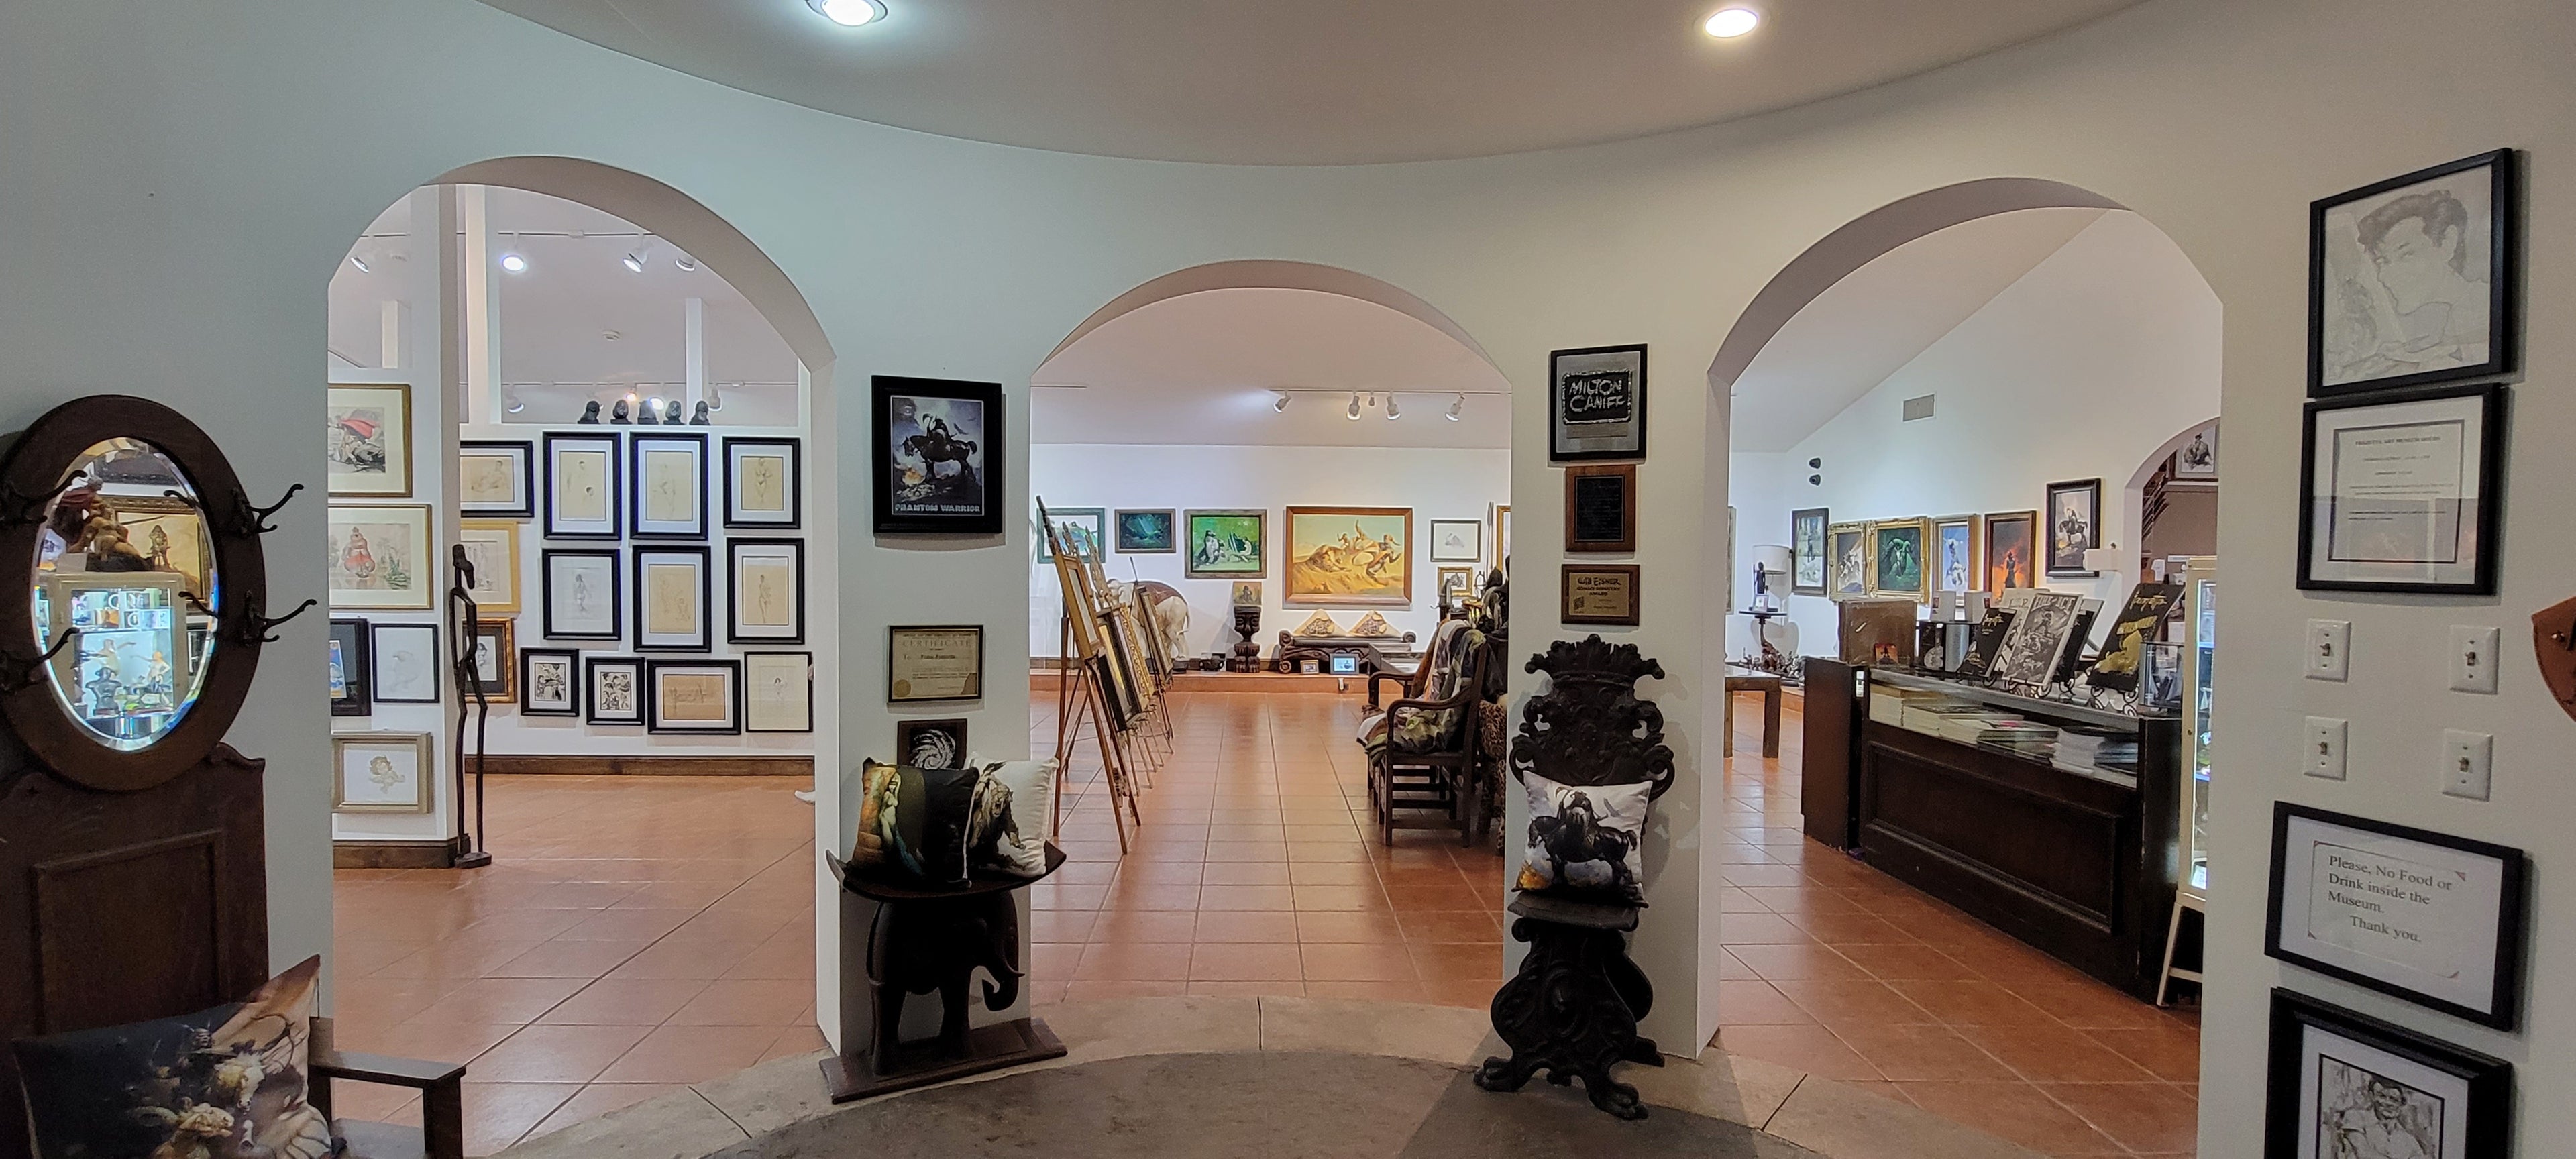 Frazetta Art Museum: An Introduction